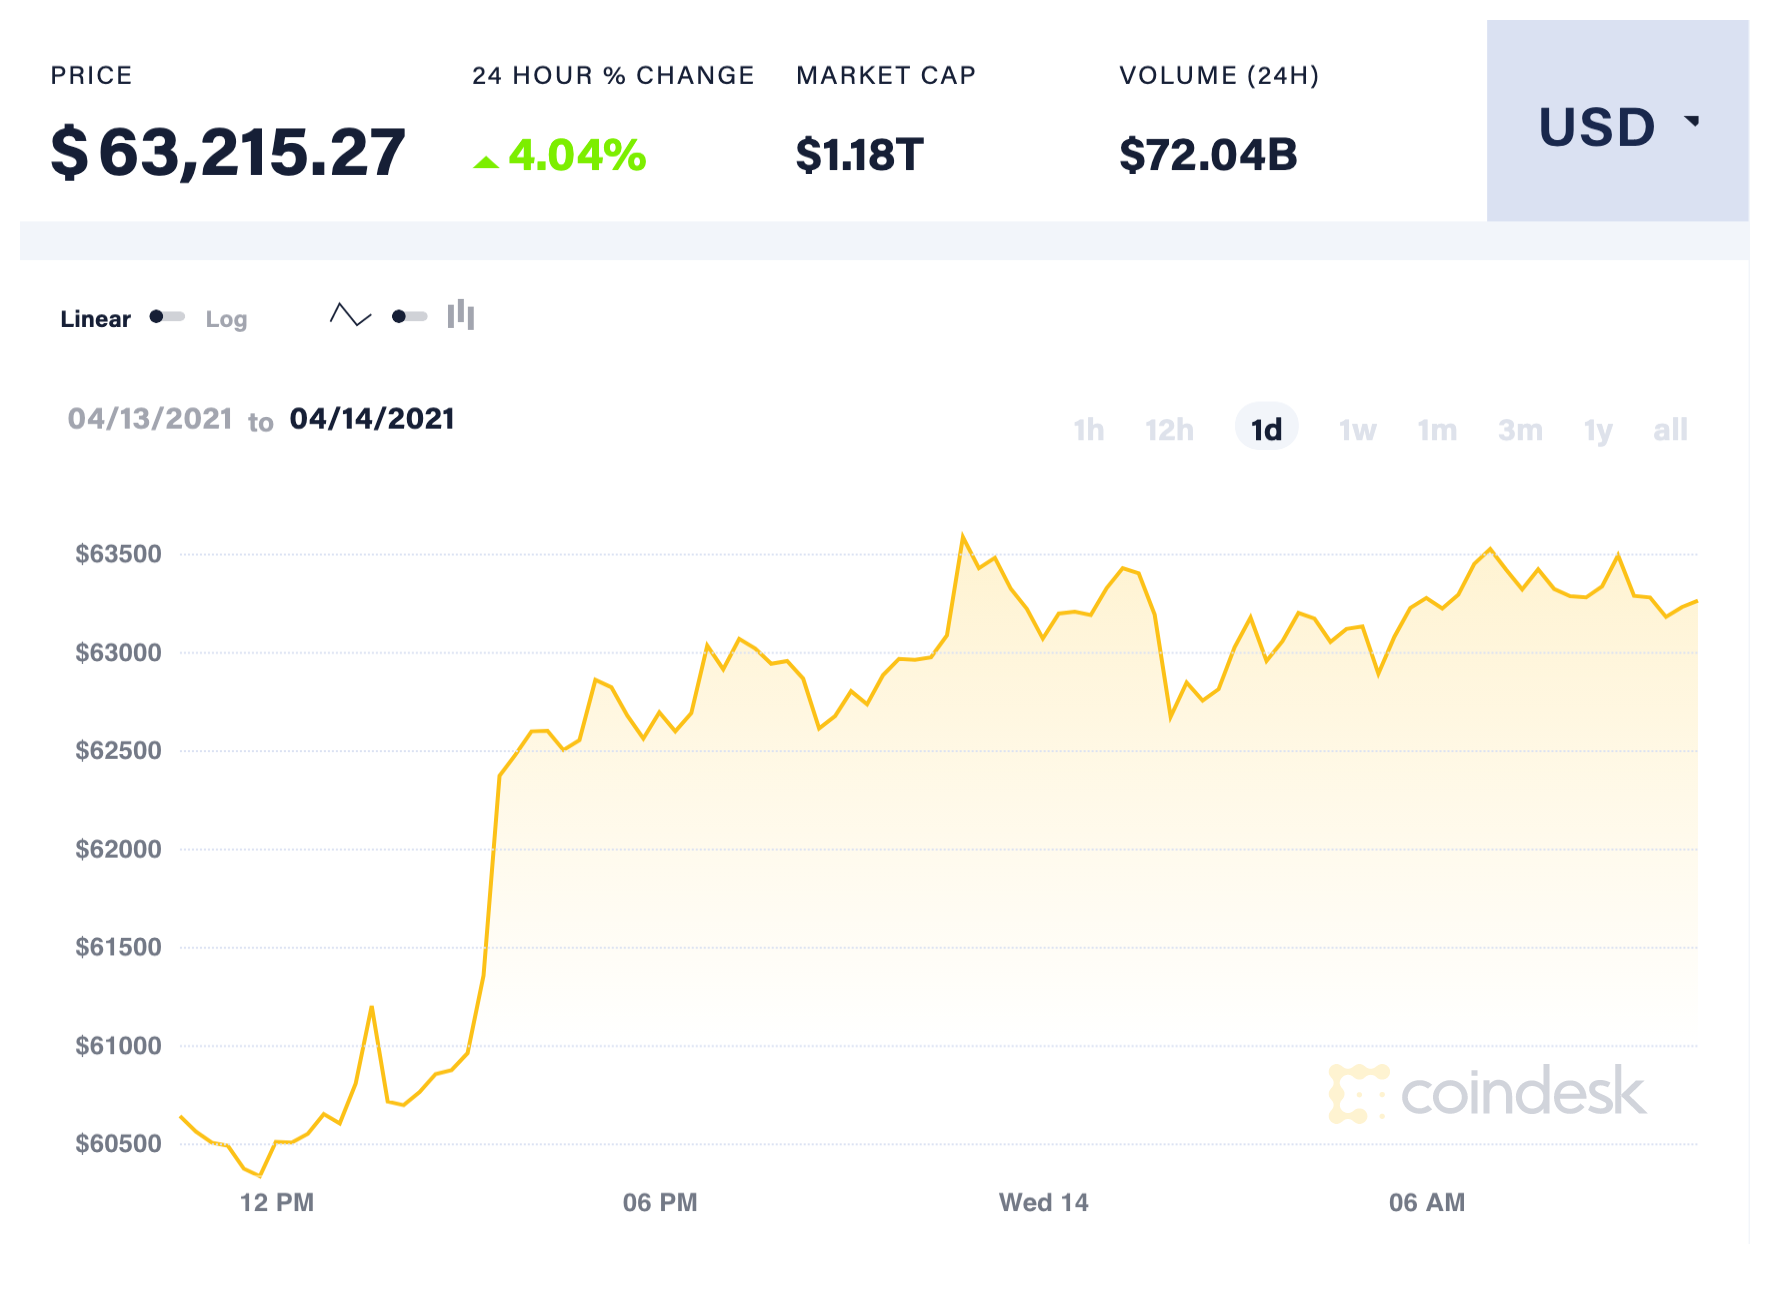 Sự kiện IPO của Coinbase đã tạo tiền đề cho đồng tiền ảo Bitcoin thiết lập mức kỷ lục mới. Ảnh: Coindesk.